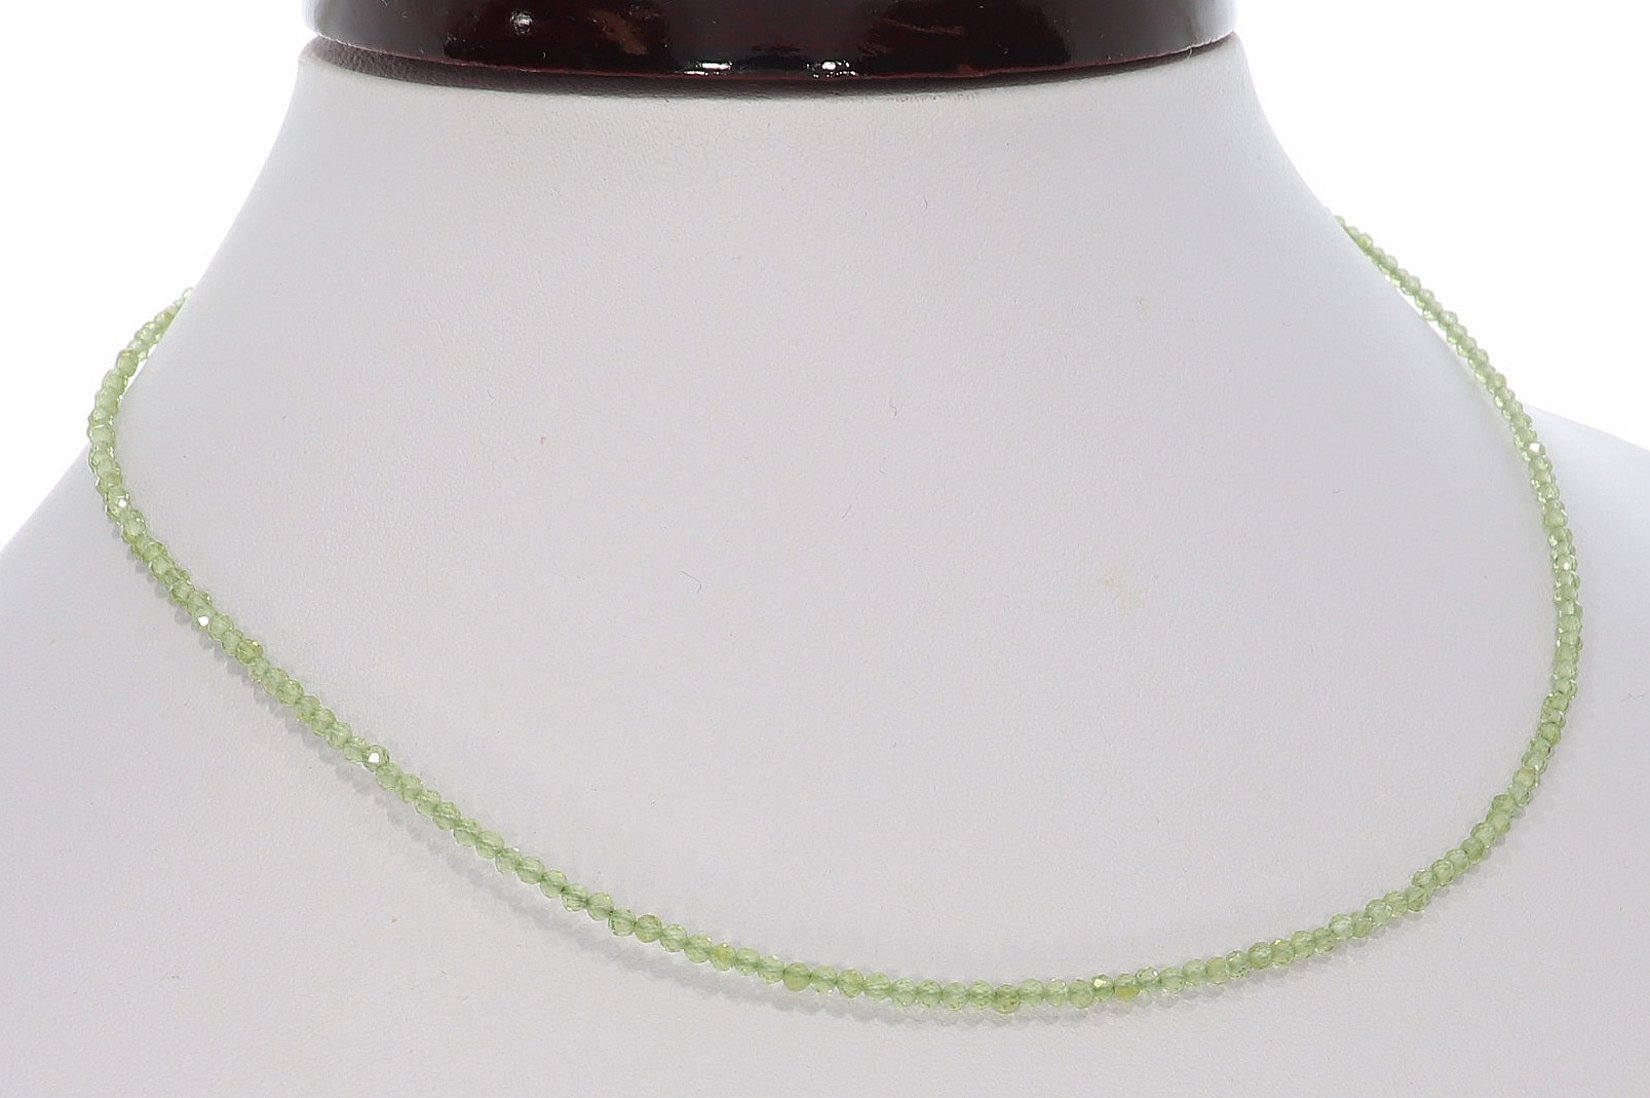 Peridot Kugel Halskette facettiert Silber farben 2mm - 40-45cm Kettenverlängerer KK307